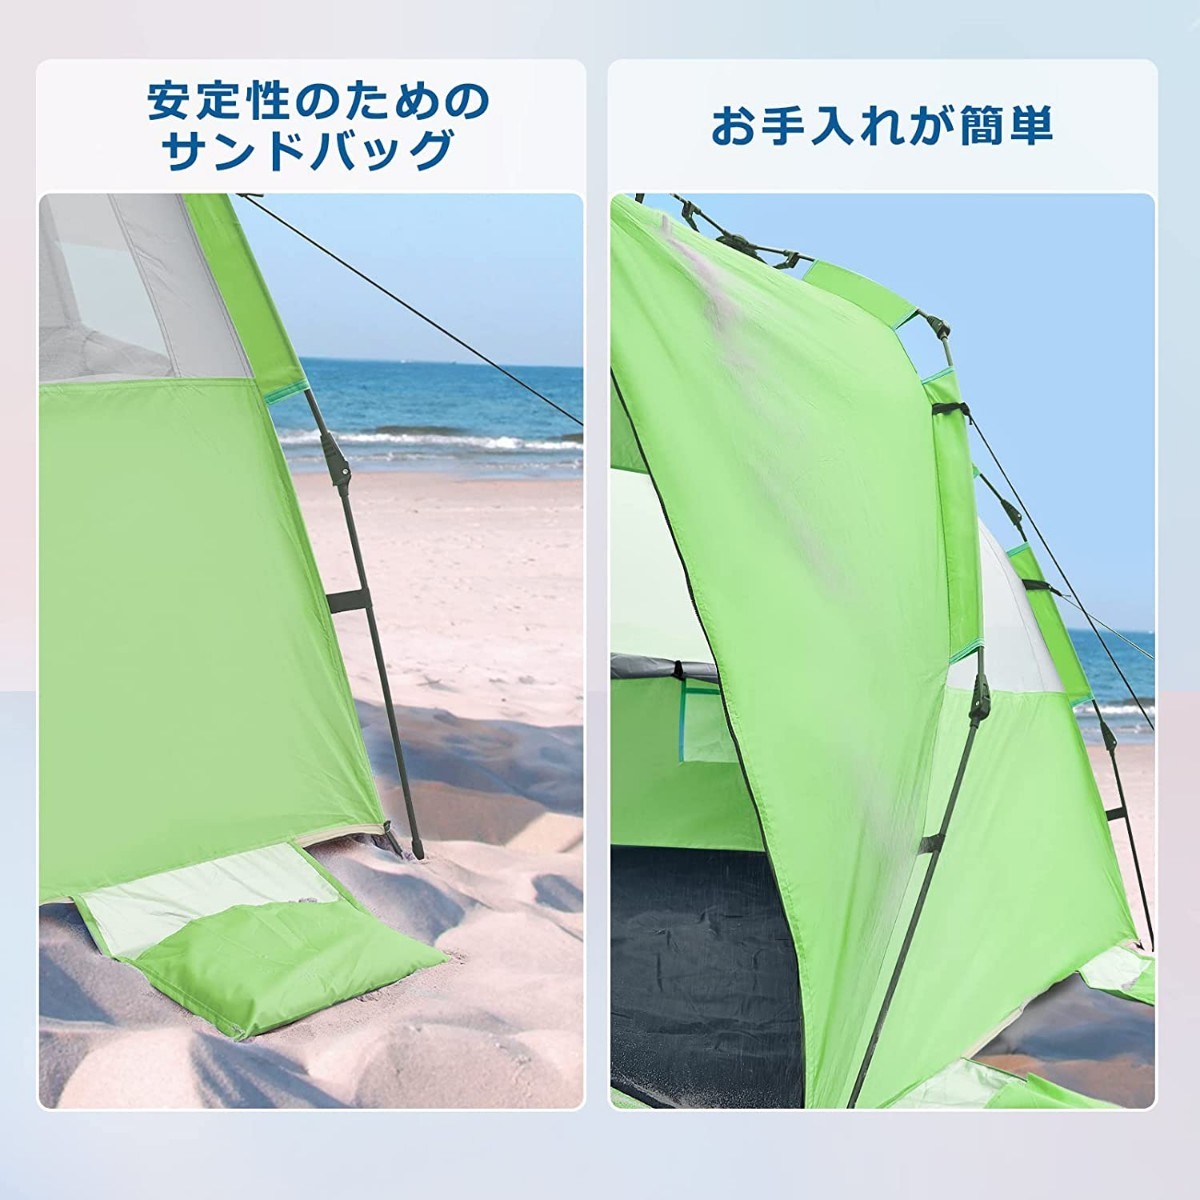 新品 ビーチテント サンシェード ワンタッチ 強力 UVカット 簡単設置 マット  アウトドア  テント 強力 Coleman